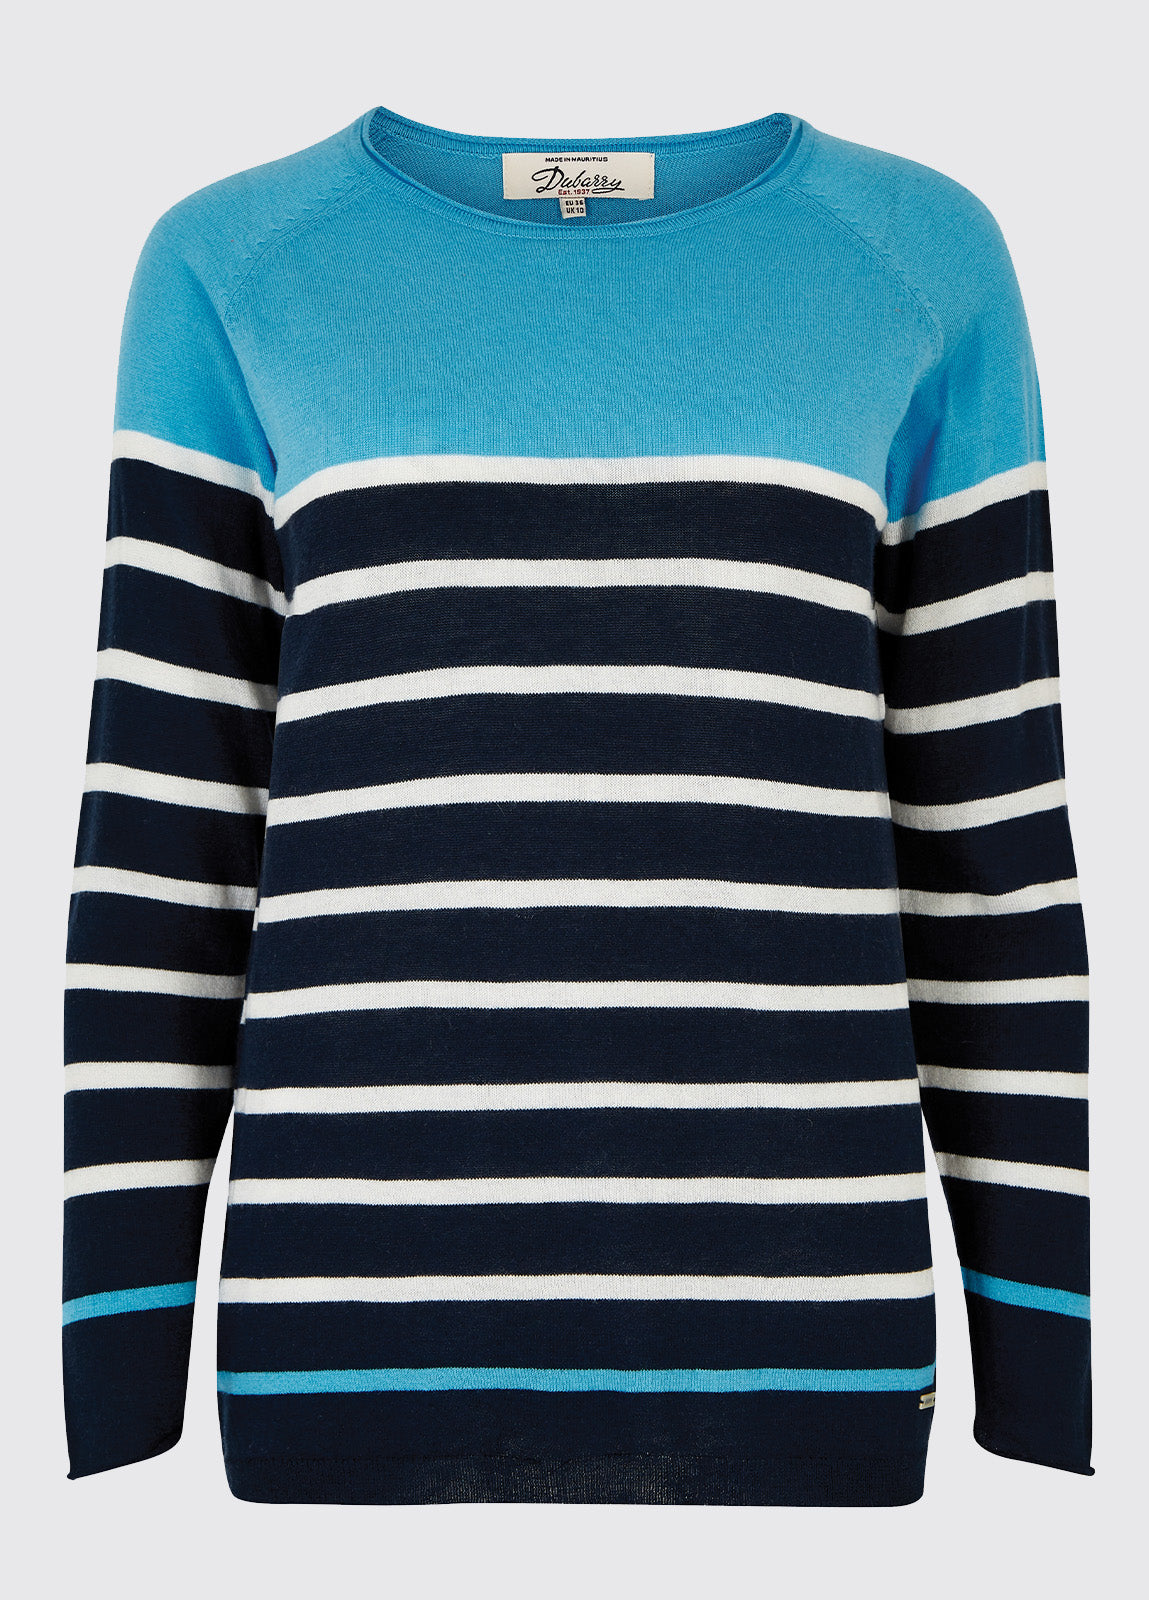 Glenties Sweater - Navy